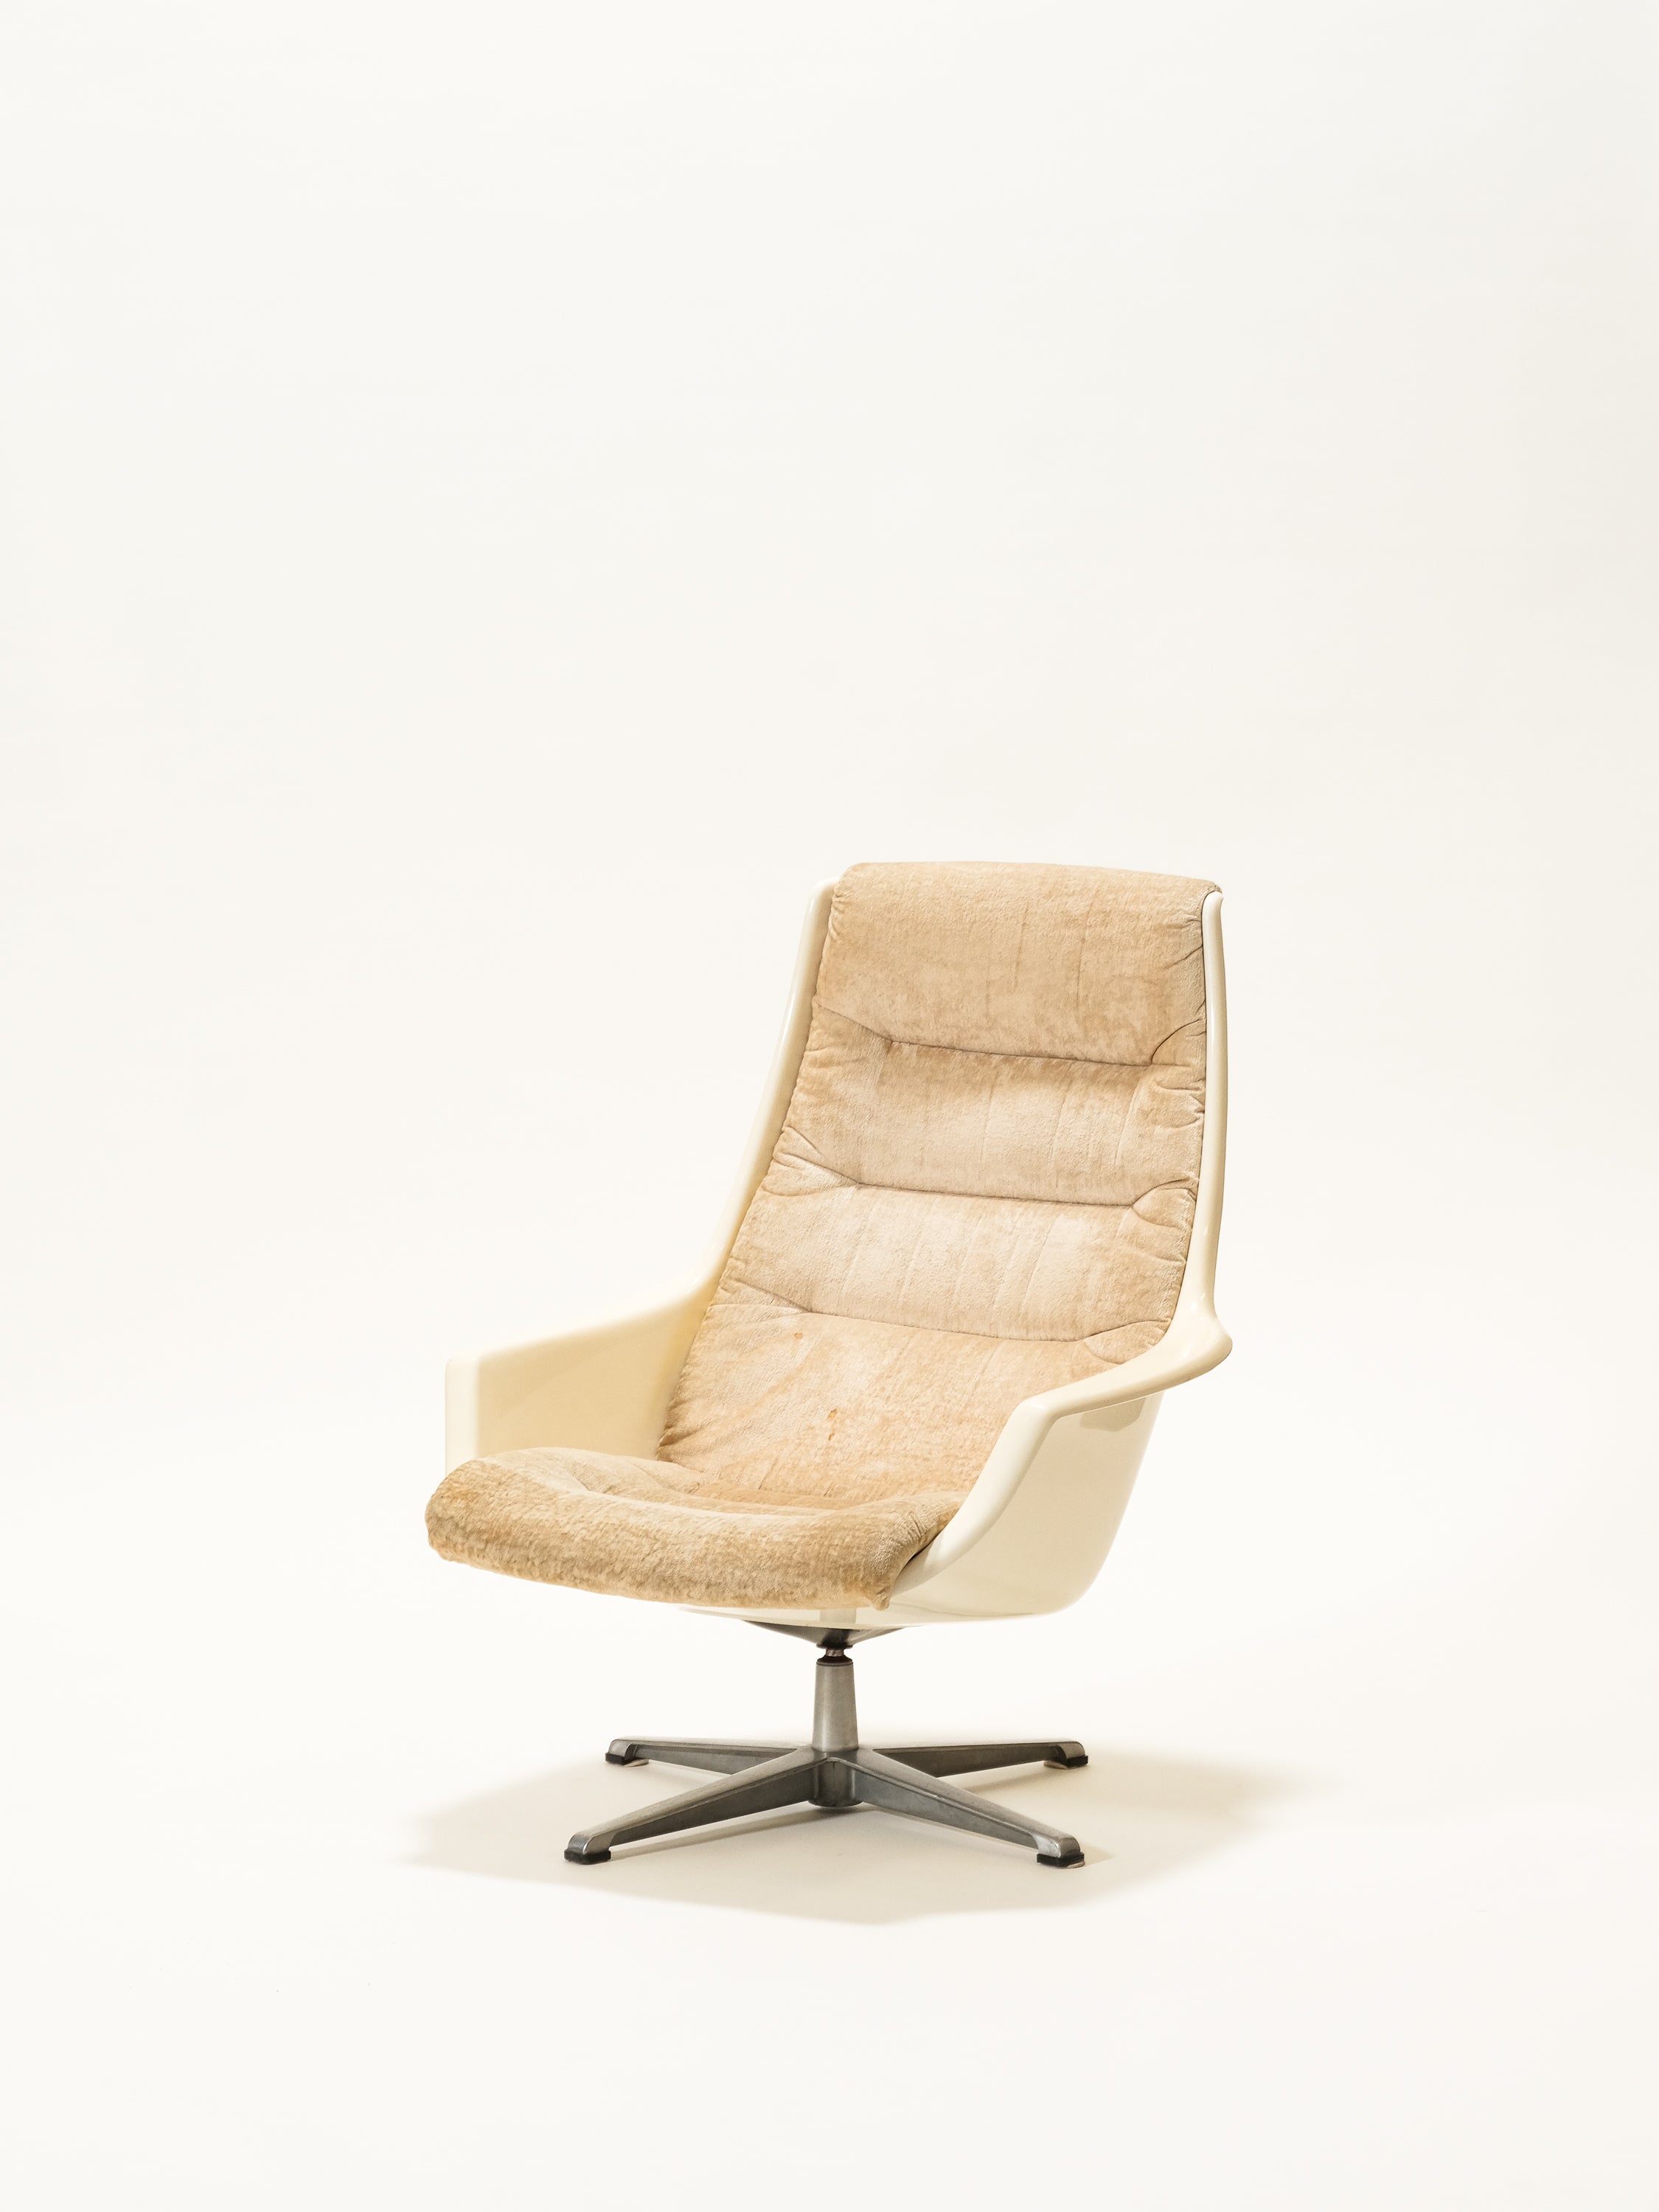 Swivel Lounge Chair Model "Planet" by Ikea, 1973